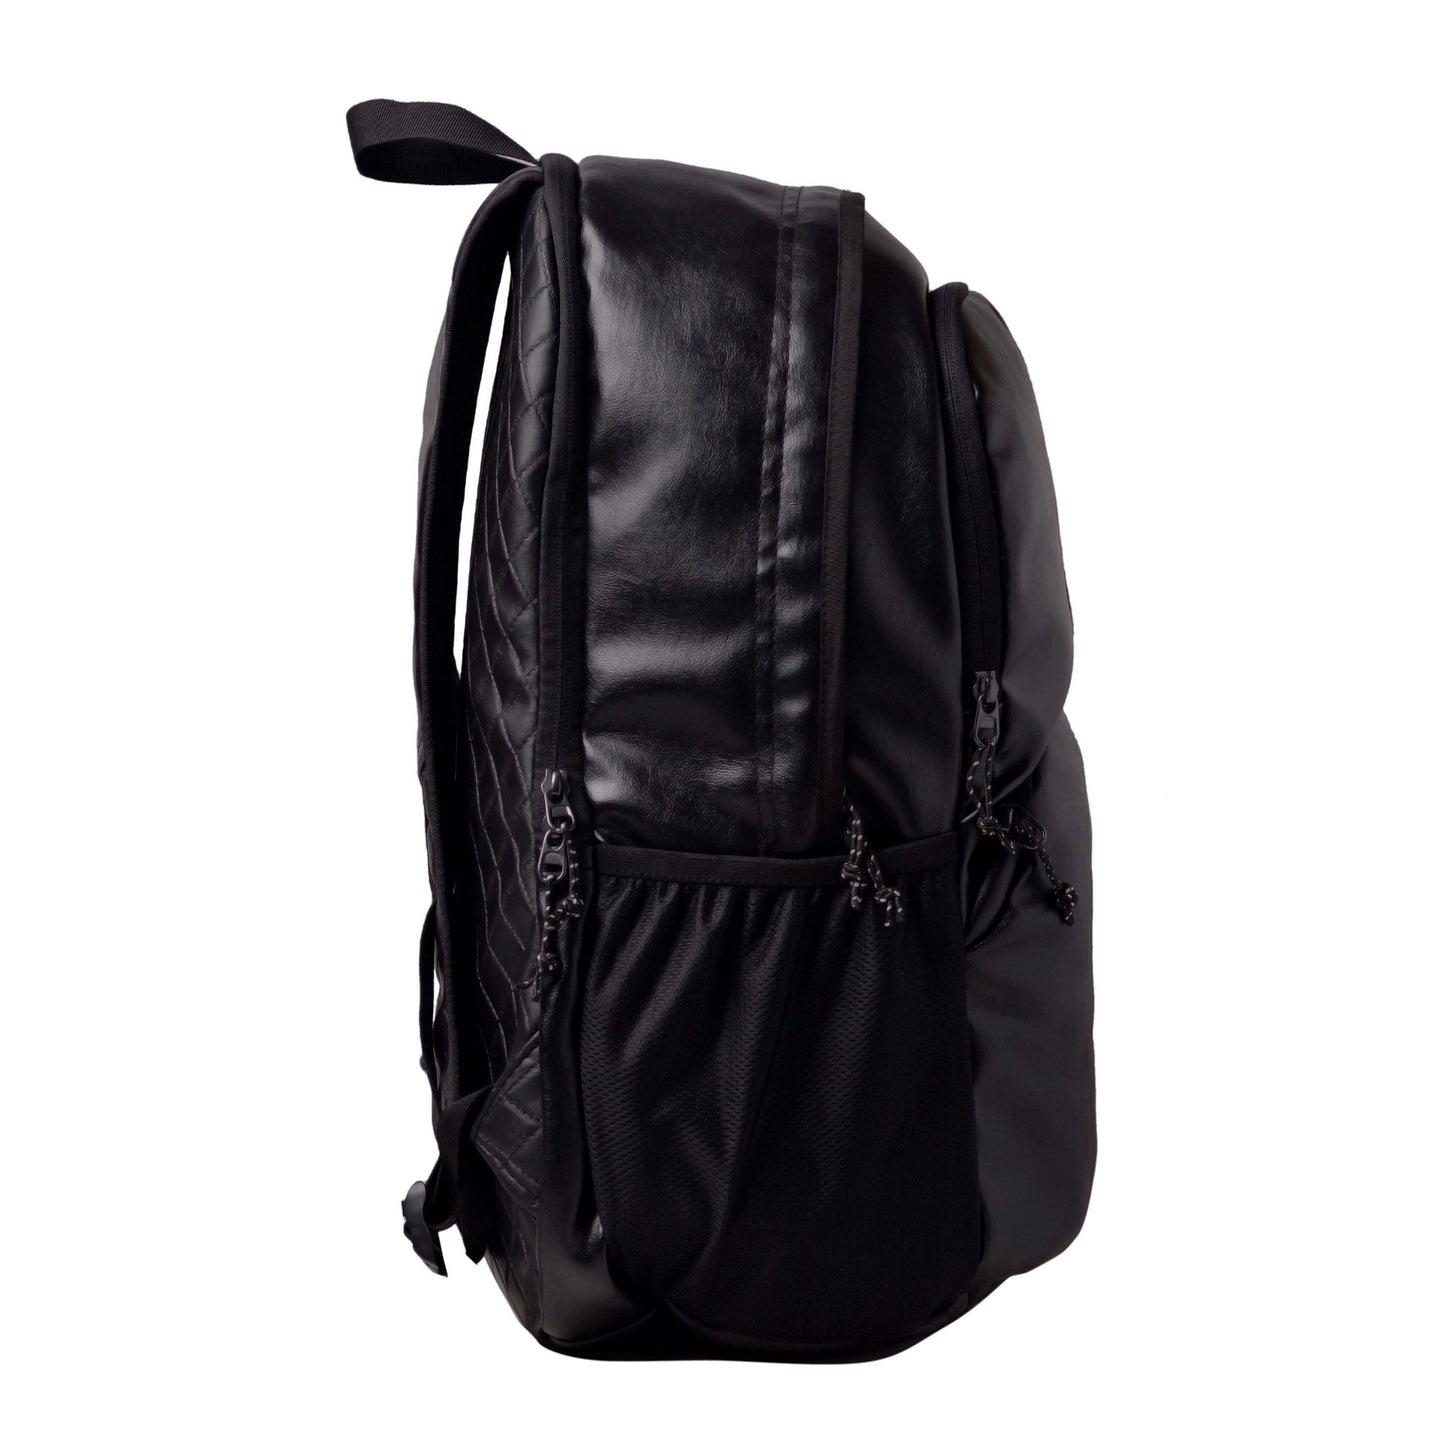 Tandrum V2 28L Black Laptop Backpack